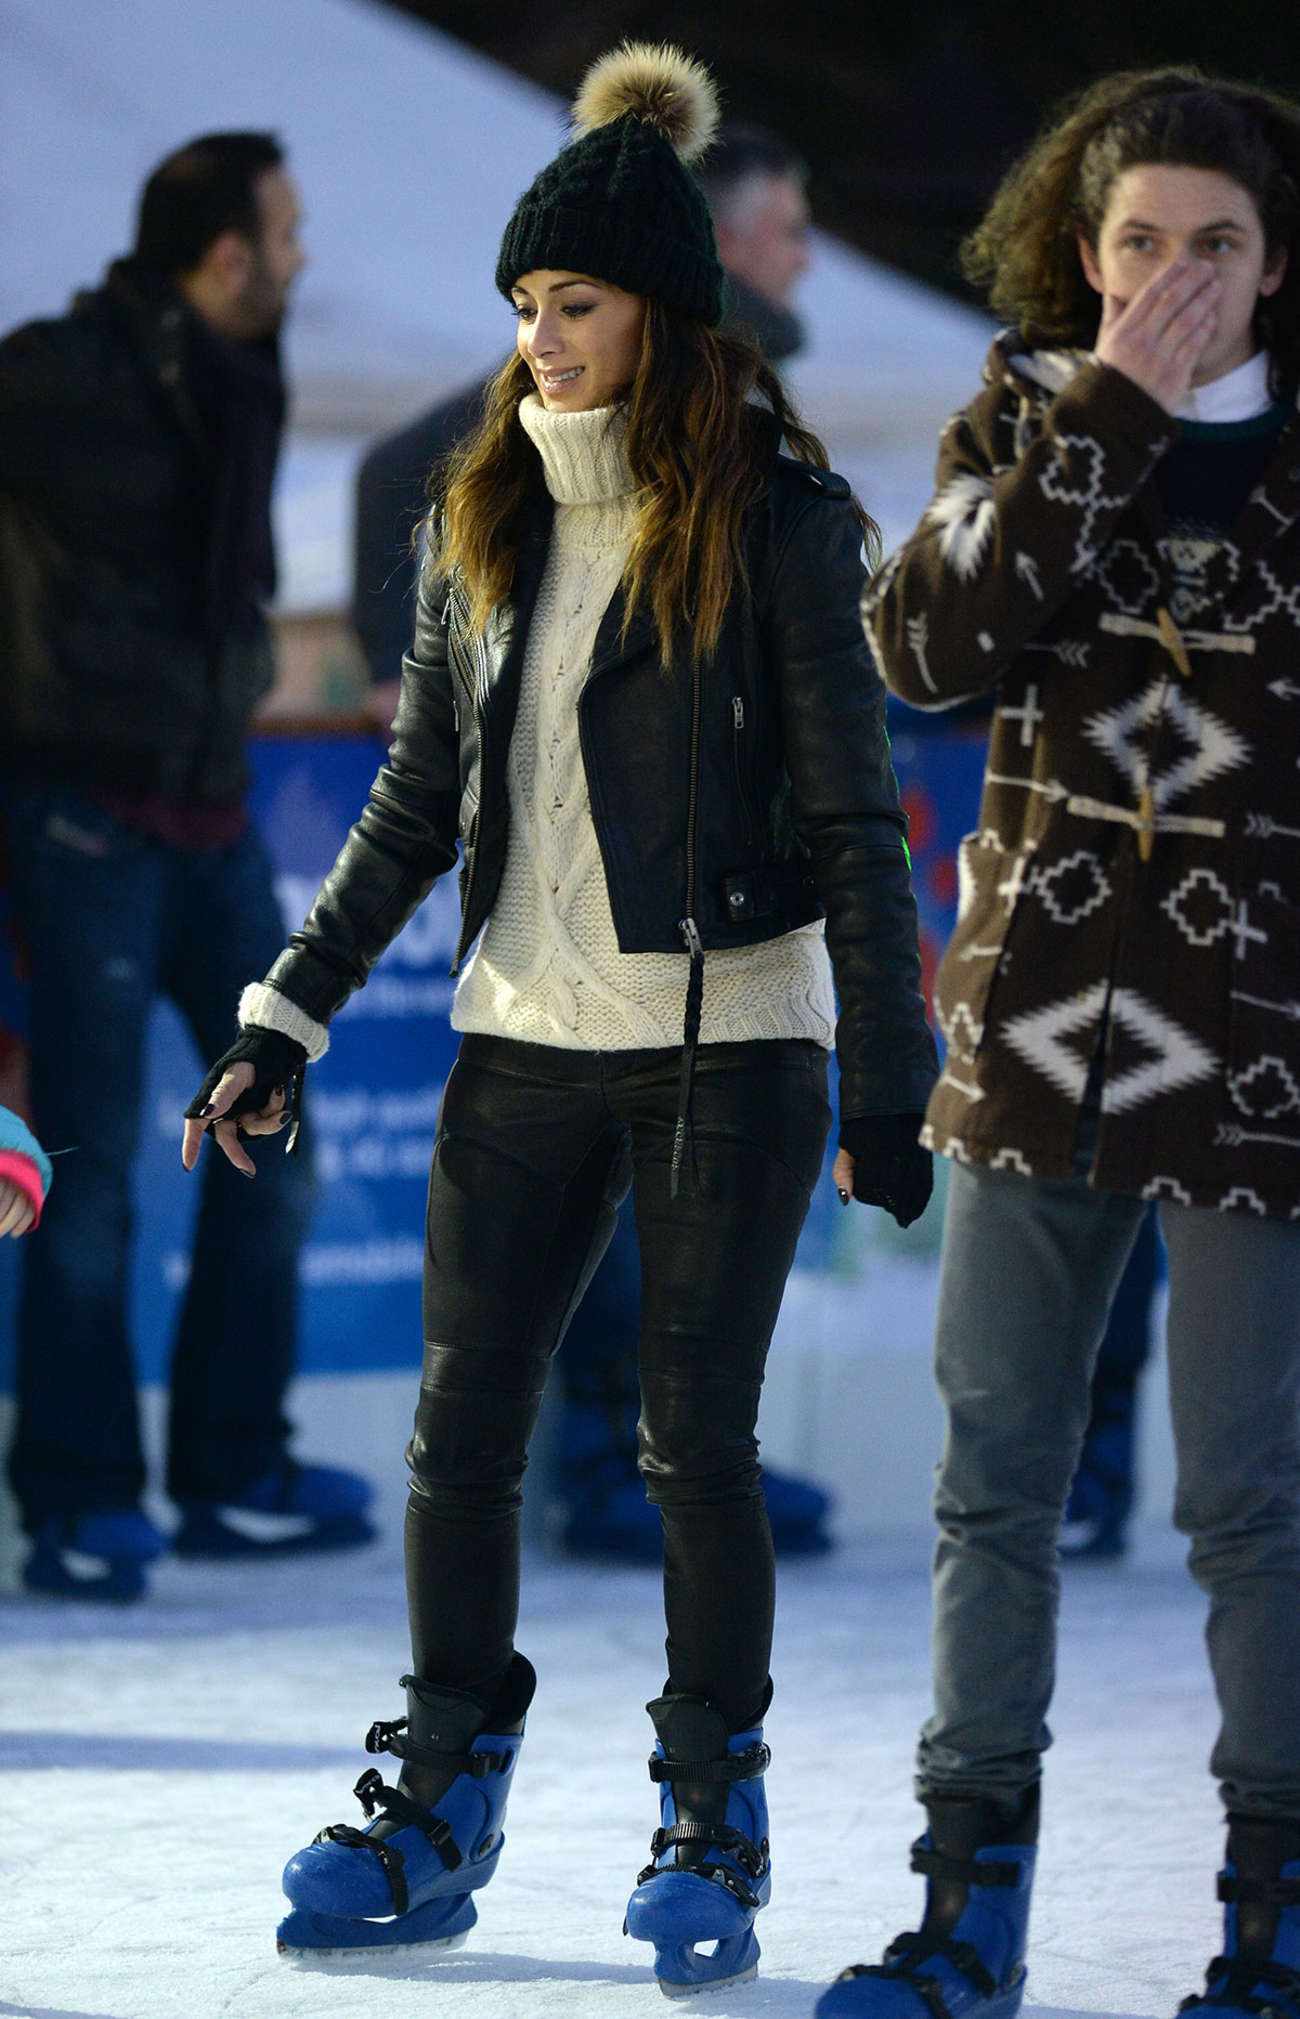 Nicole Scherzinger at Winter Wonderland in London